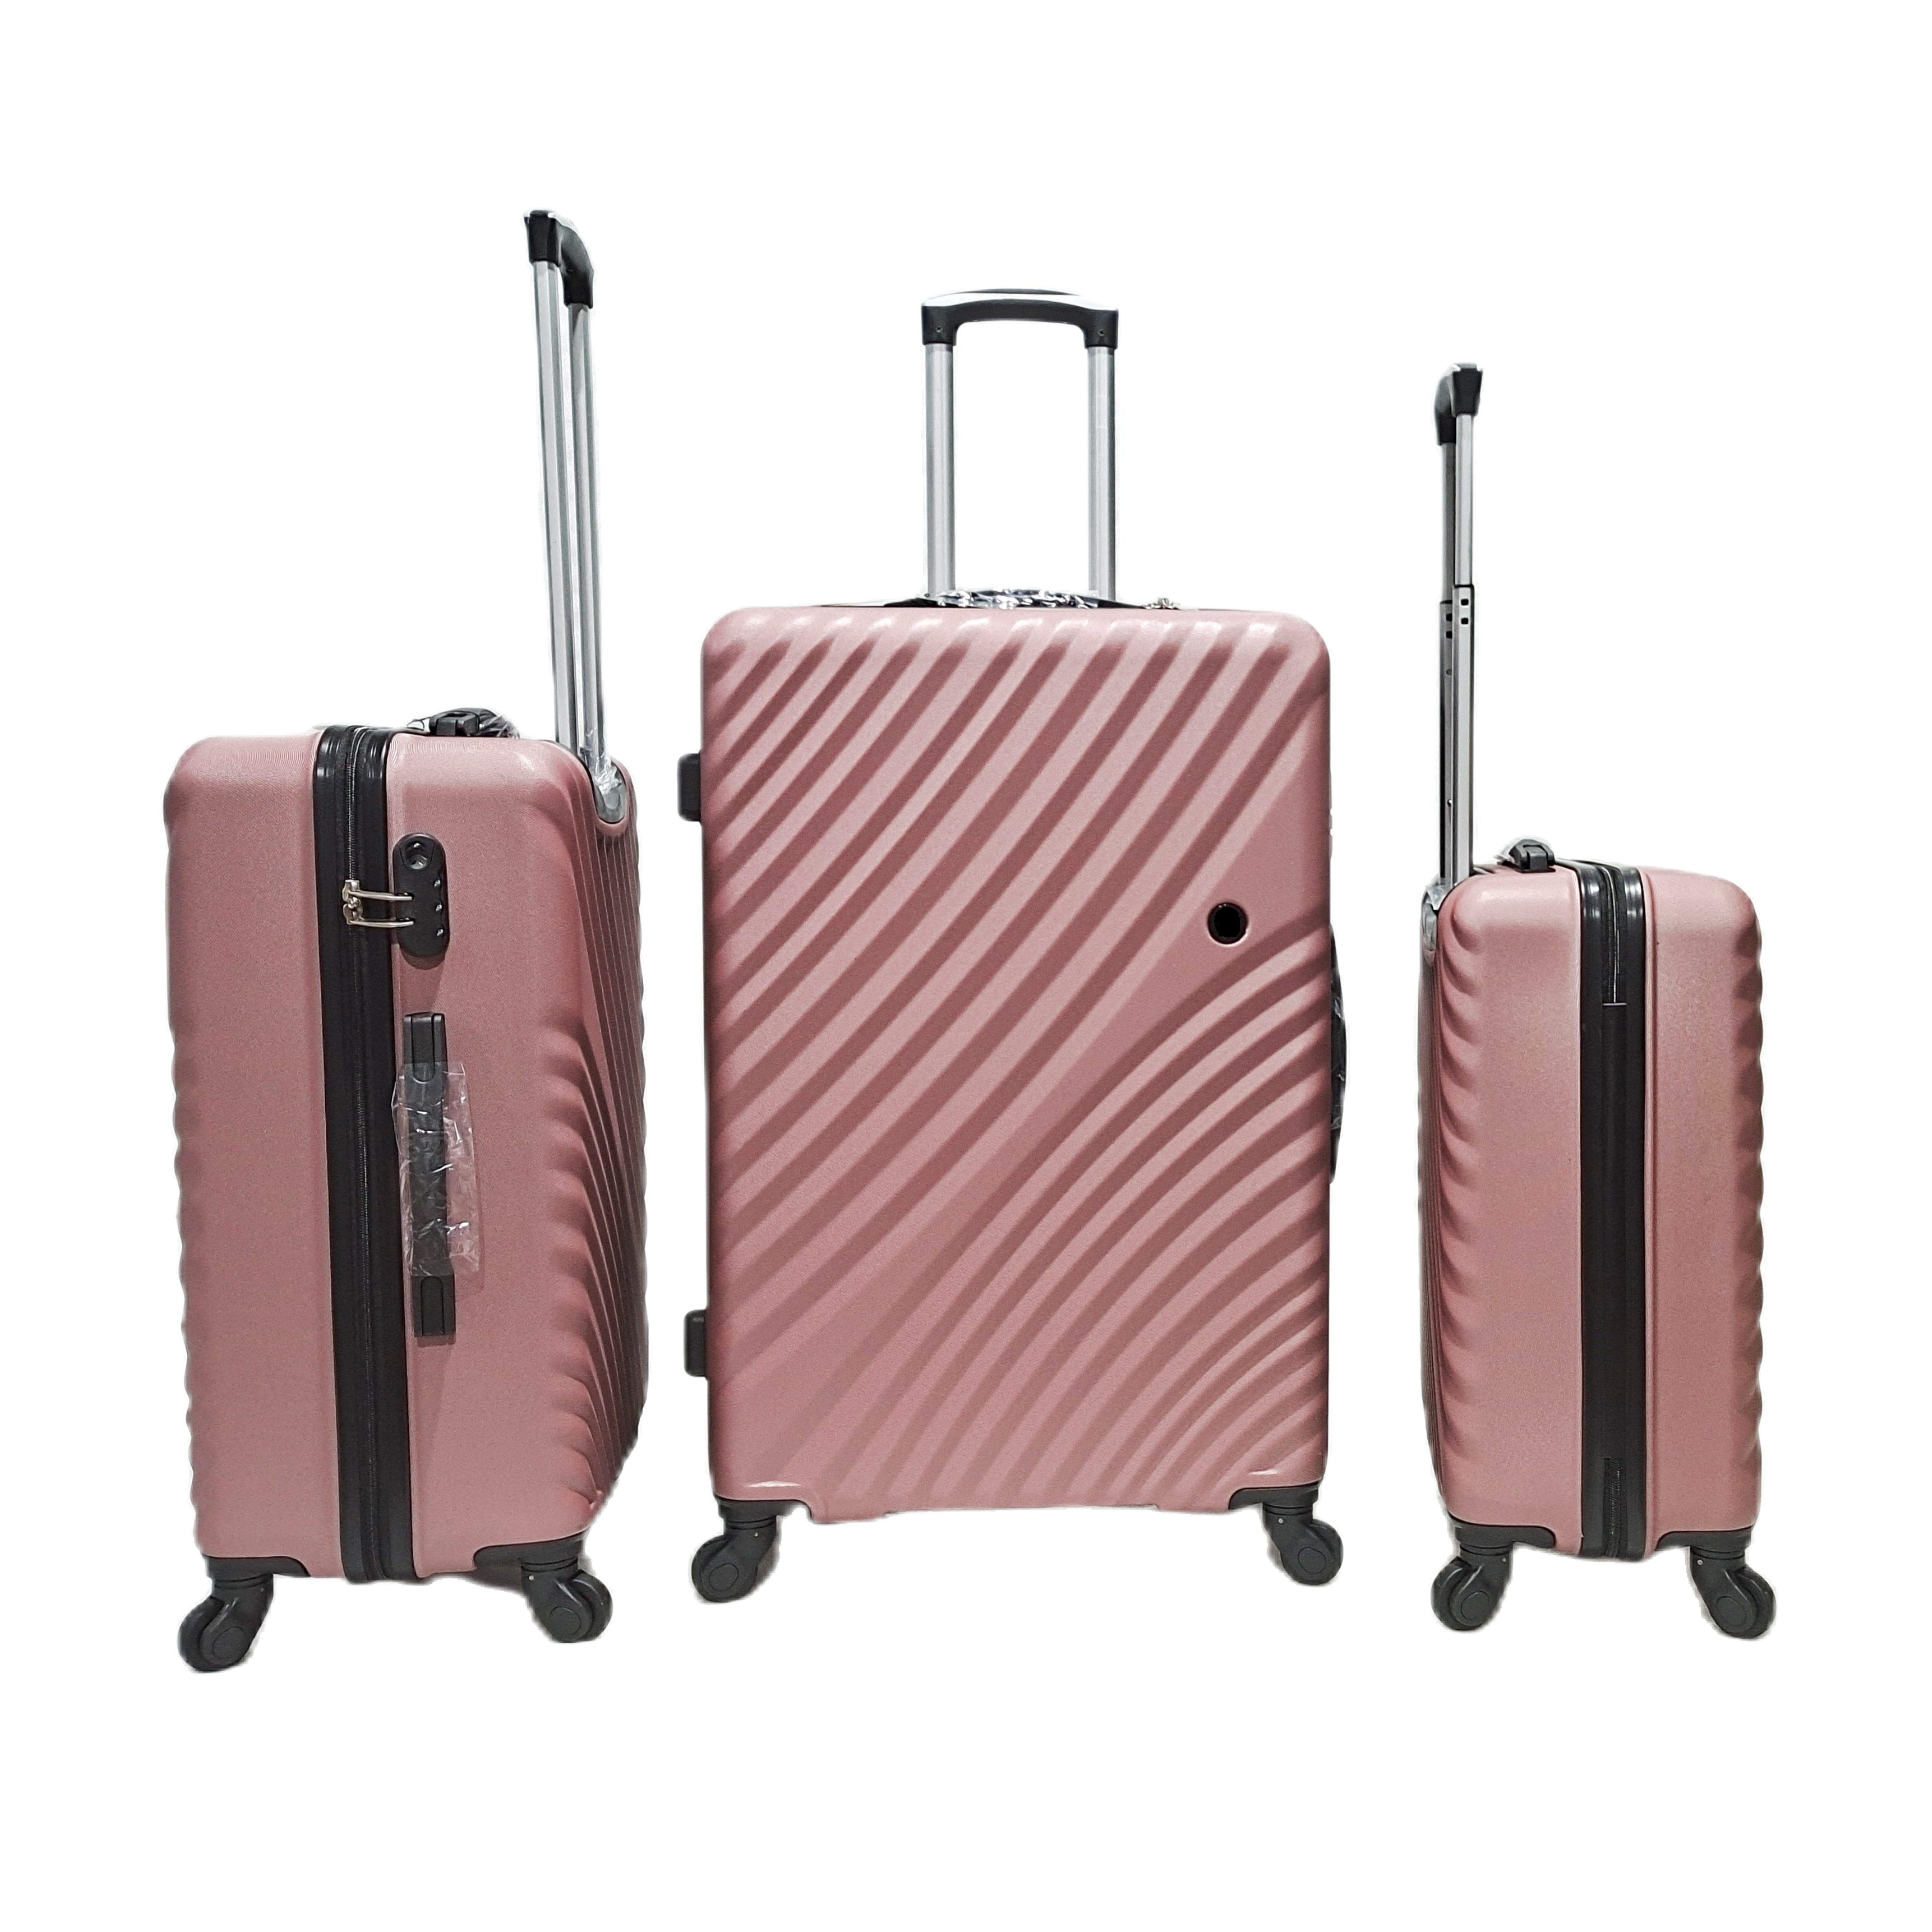 新しい設計 ABS スーツケースの荷物旅行袋 4 紡績車の車輪のトロリー スーツケース セット